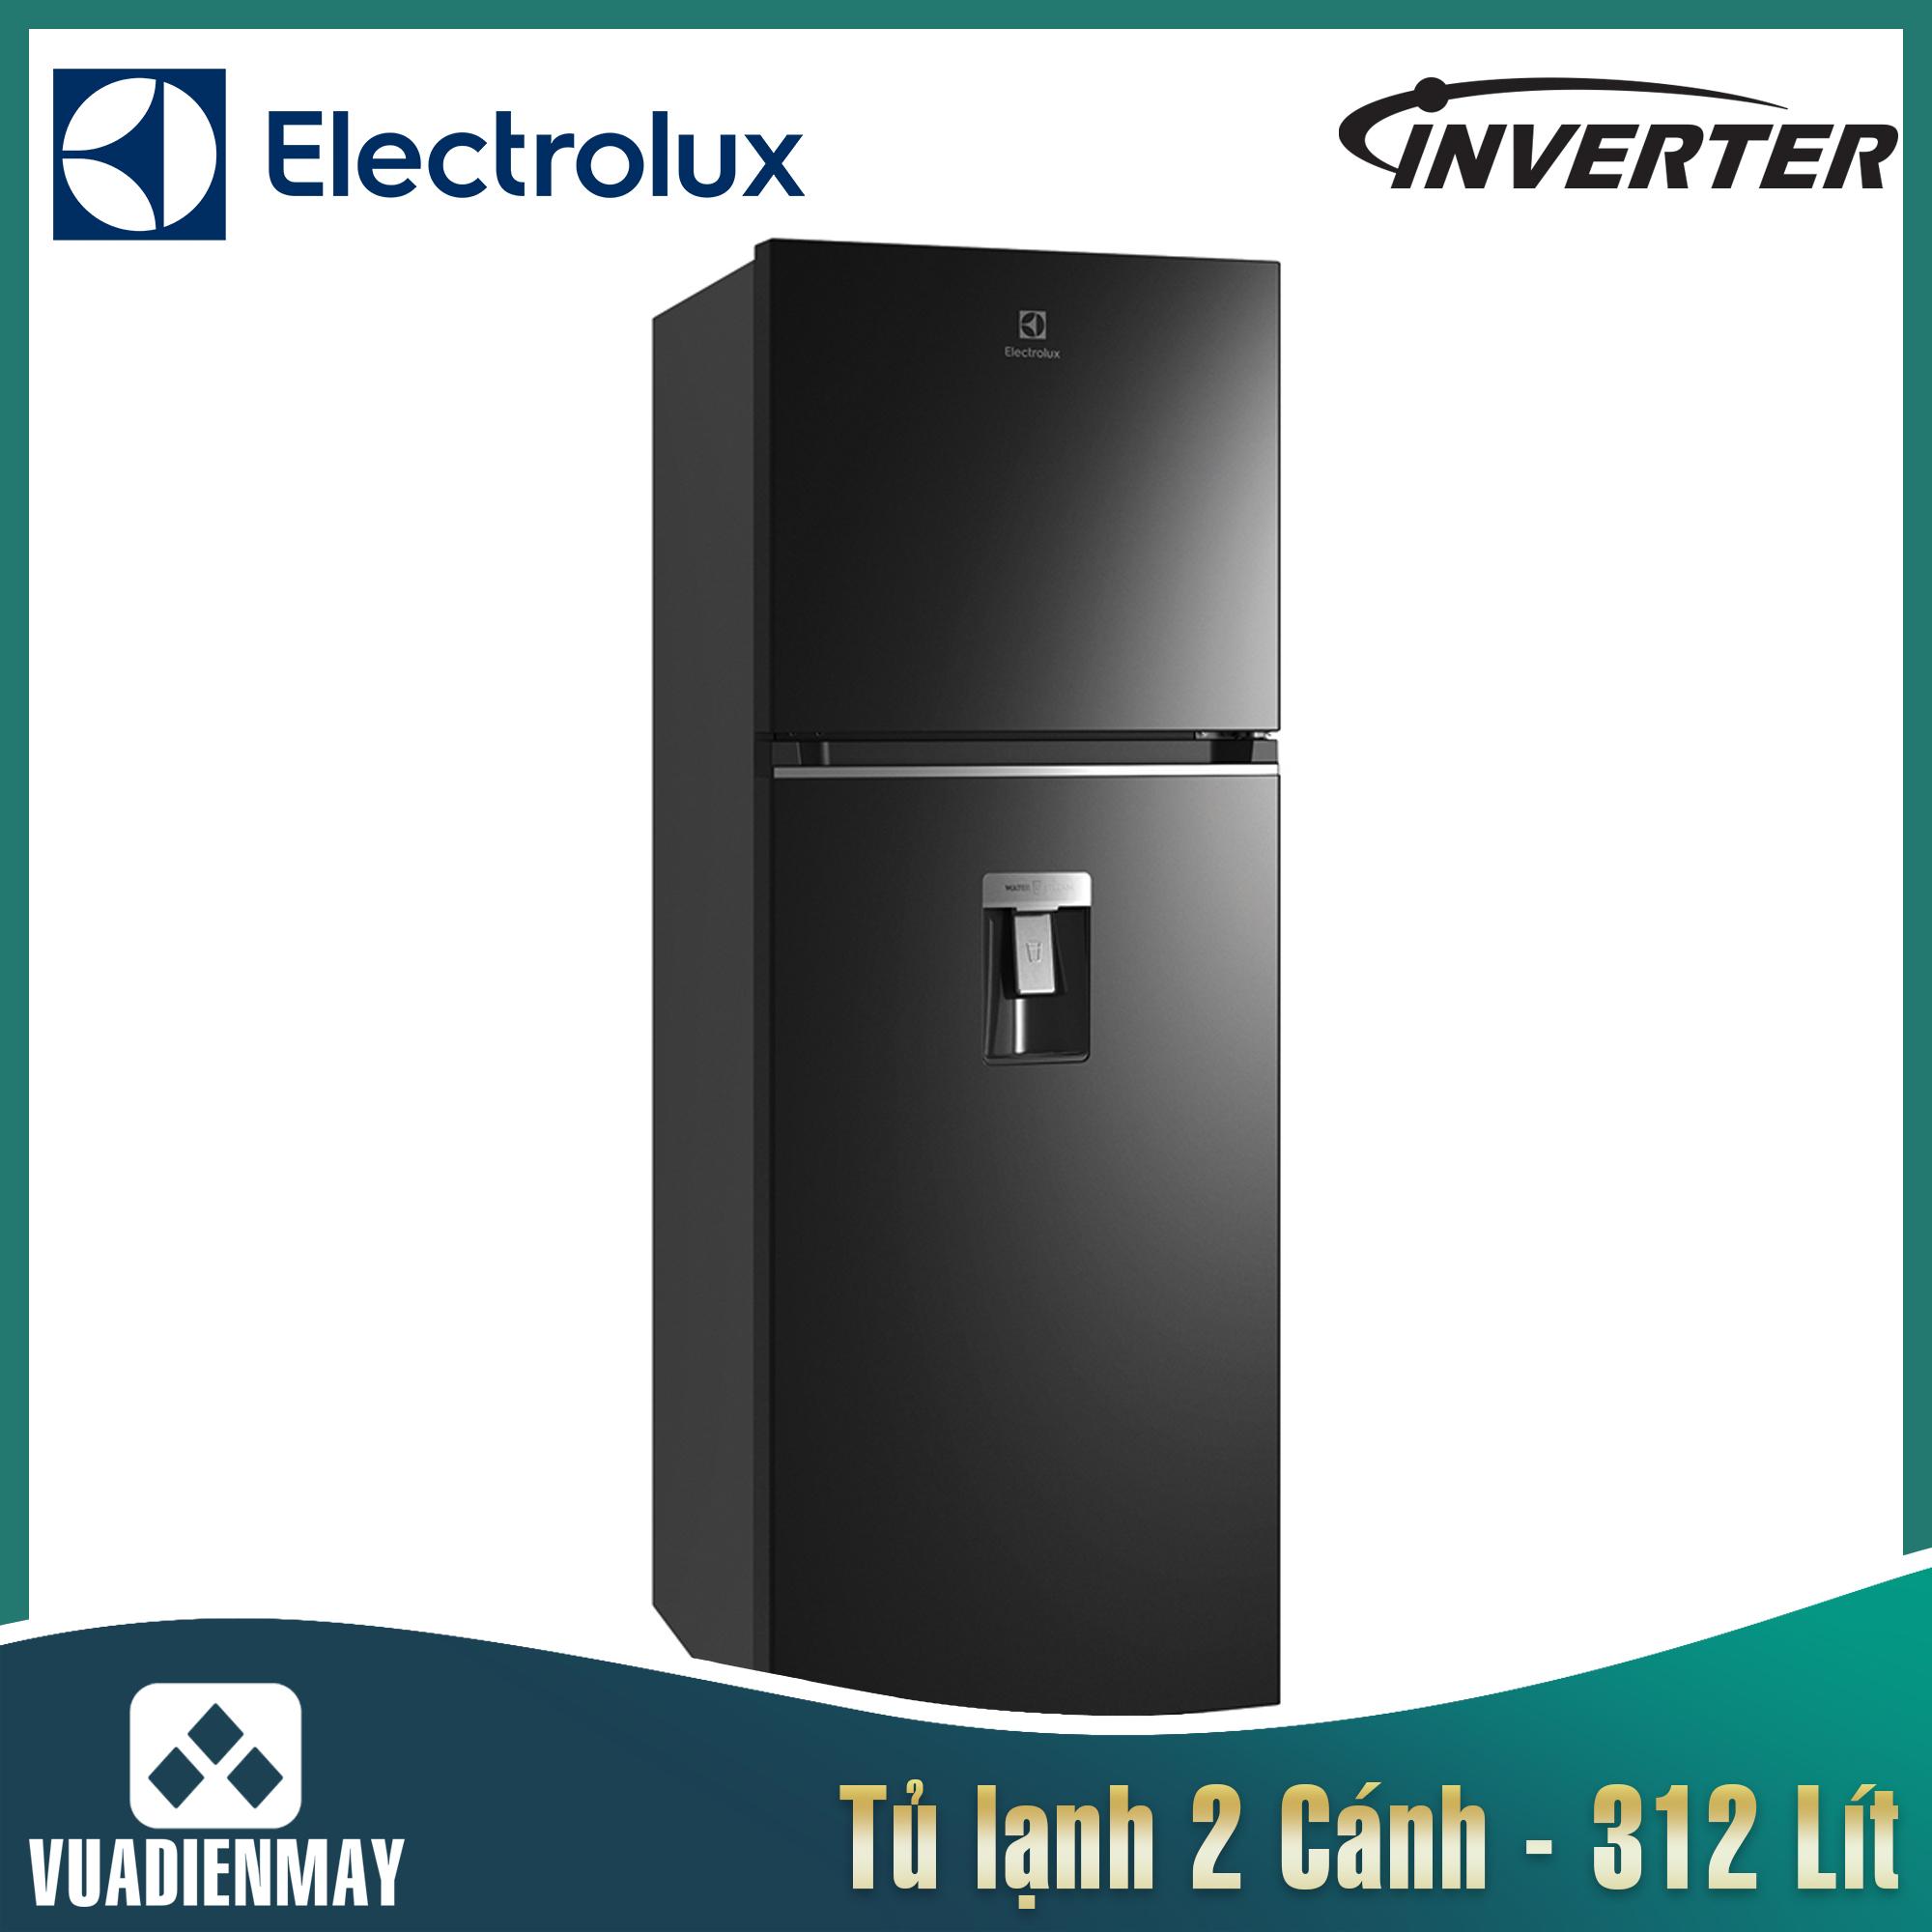 Tủ lạnh Electrolux inverter 312 lít màu đen